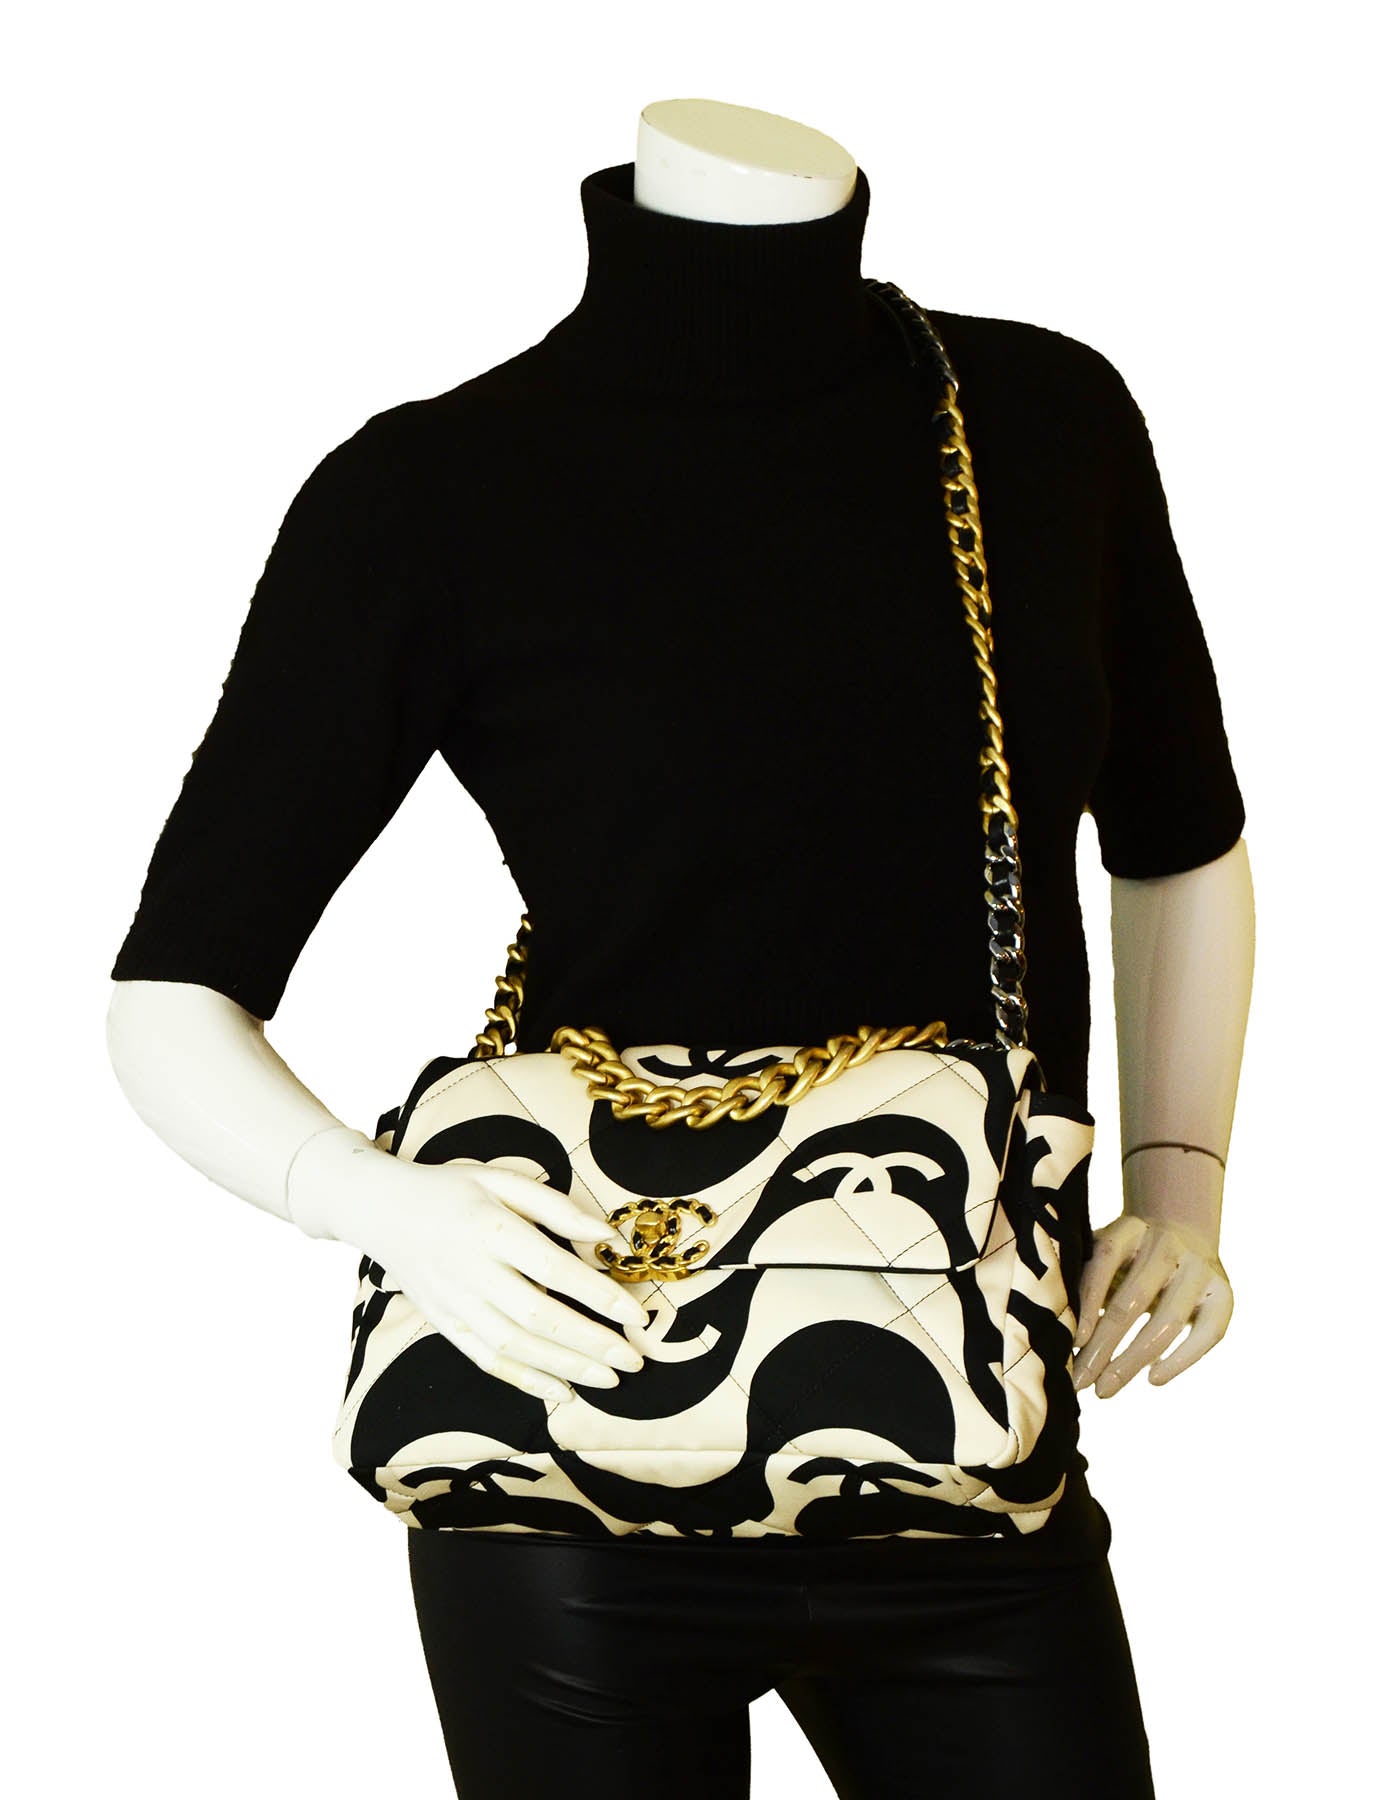 Chanel 19 Large Flap Bag Black & Ecru – MILNY PARLON